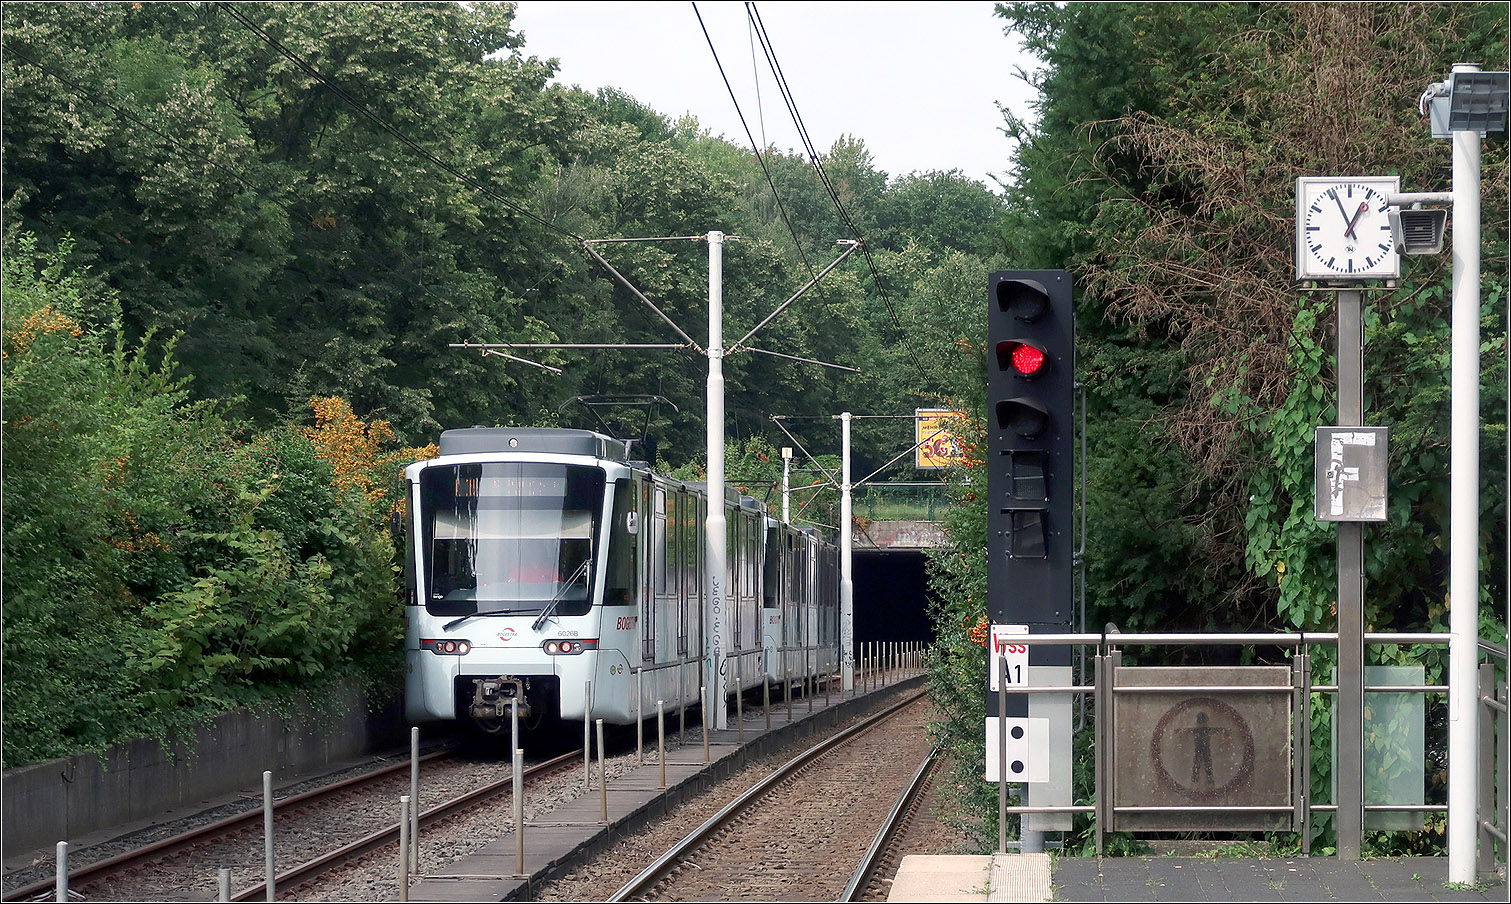 Die U35-Süd in Bochum - 

1993 wurde die U35 vom Hauptbahnhof nach Hustadt weitergeführt, wobei eine in den 1970ige Jahren gebaute Schnellstraßenbahnlinie für die Stadtbahn adaptiert wurde. Diese wurde durch eine ab dem Hauptbahnhof um zwei Stationen verlängerte Tunnelstrecke an die U35 angeschlossen.

Da es auf der ansonsten kreuzungsfreien oberirdischen Strecke drei Bahnübergänge gibt, hat mit dieser Verlängerung die U35 auch ihren Status als 'echte' U-Bahn verloren.

Im Bild befährt ein Stadler Tango-Stadtbahnzug die Tunnelrampe an der Haltestelle Wasserstraße.

22.08.2023 (M)